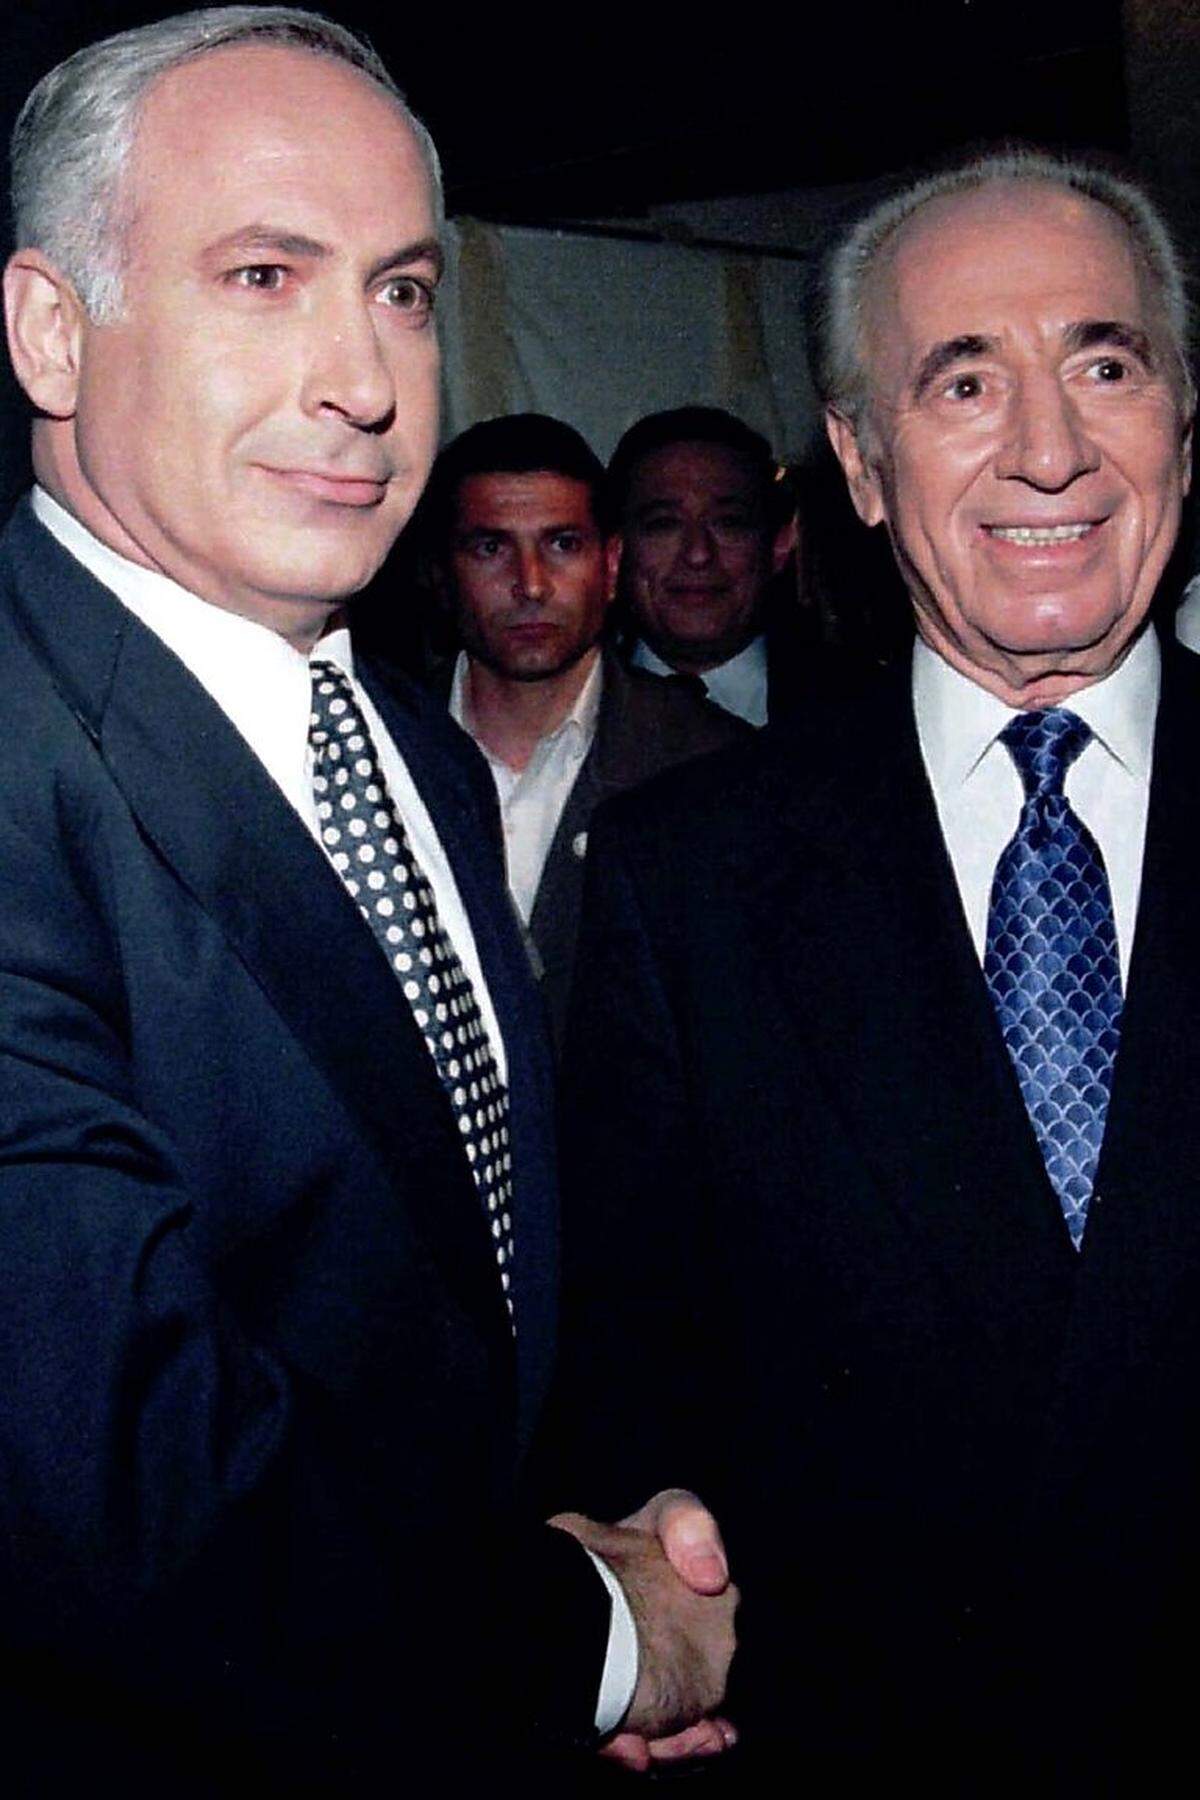 Der politische Zweikampf war nicht die bevorzugte Disziplin von Shimon Peres, dennoch stellte er sich ihm immer, wenn es erforderlich war. Hier schüttelt der damalige Premier nach einem Duell mit seinem Herausforderer Benjamin Netanjahu vom Likud die Hand. Netanjahu gewann die Parlamentswahl 1996 - und er sollte wieder im Premiersamt sein, als Peres die letzten Jahre an der Staatsspitze zubrachte.